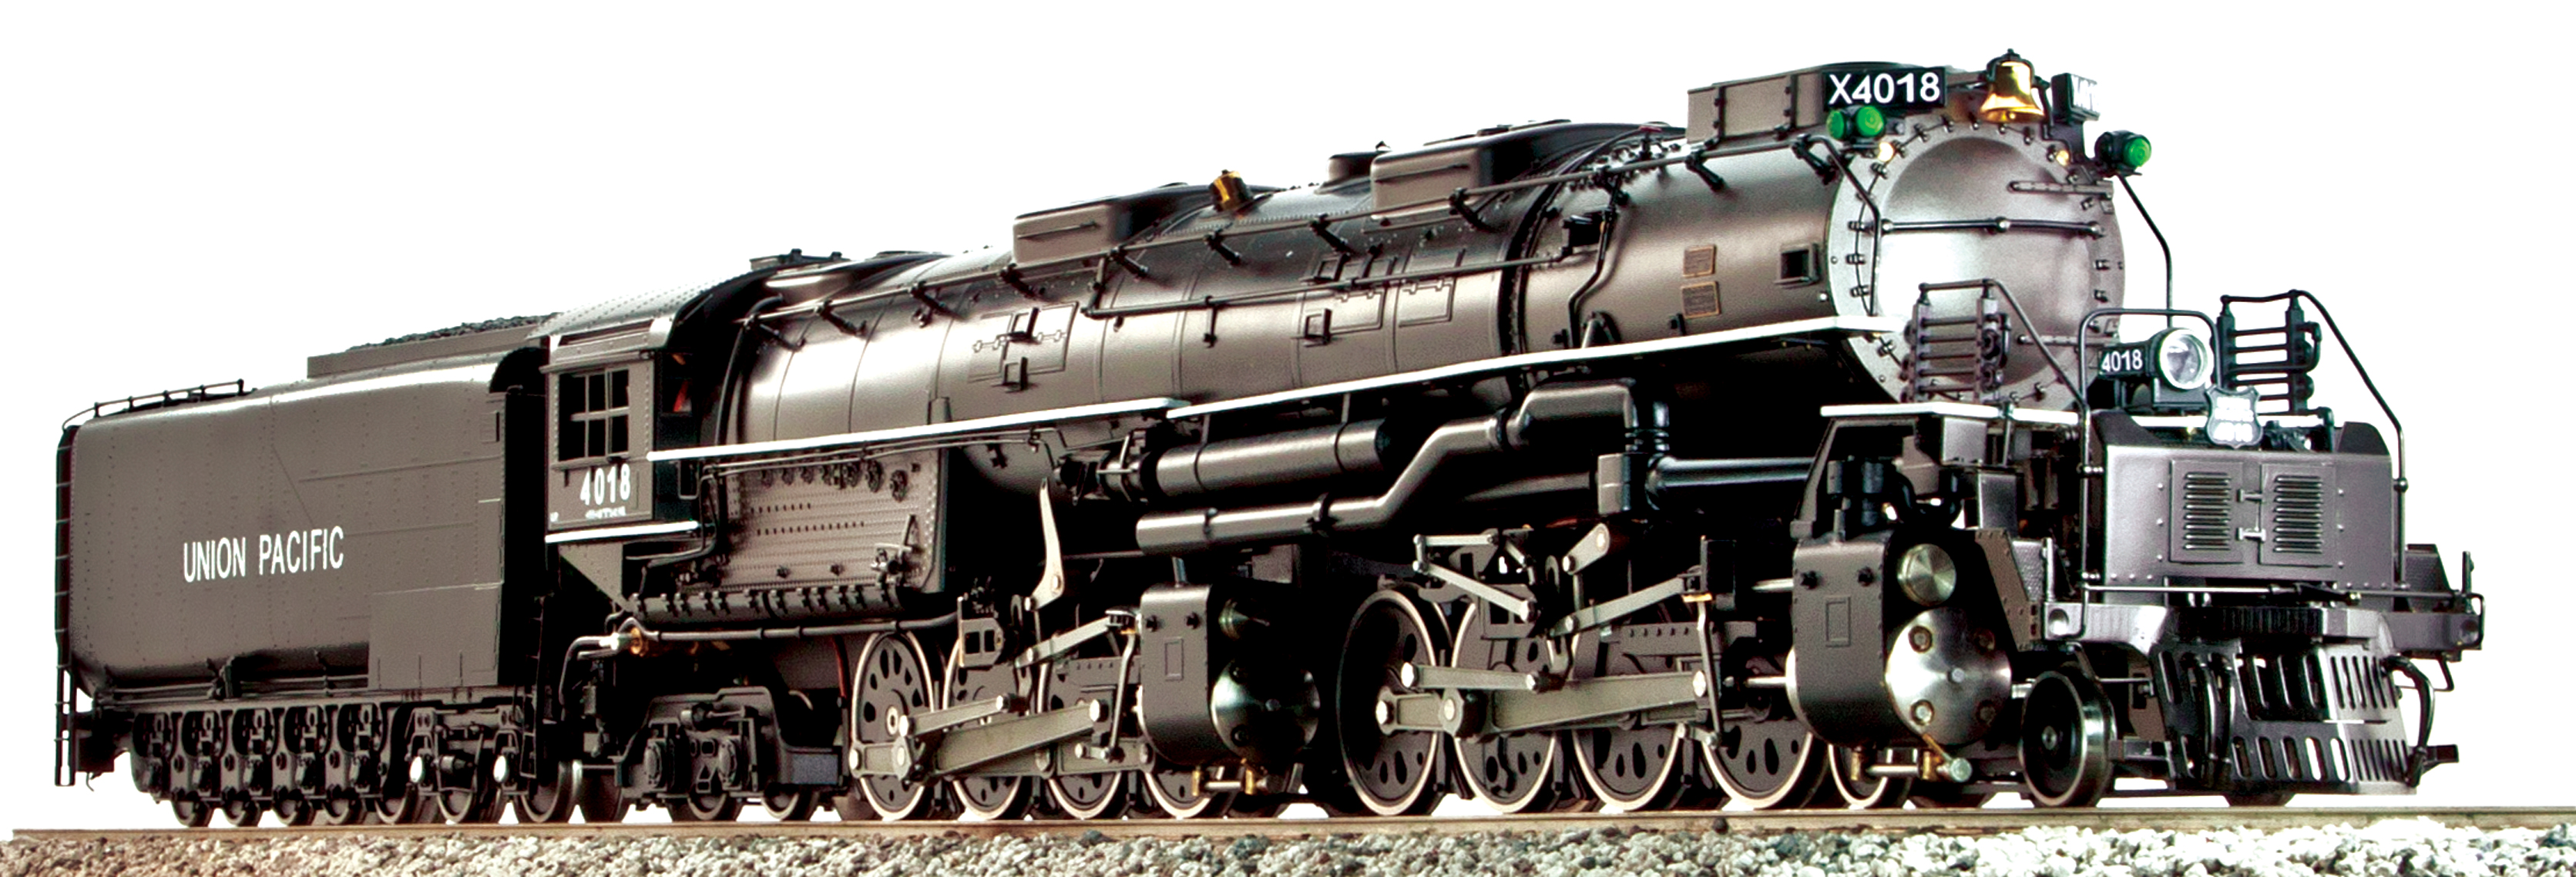 g scale big boy locomotive